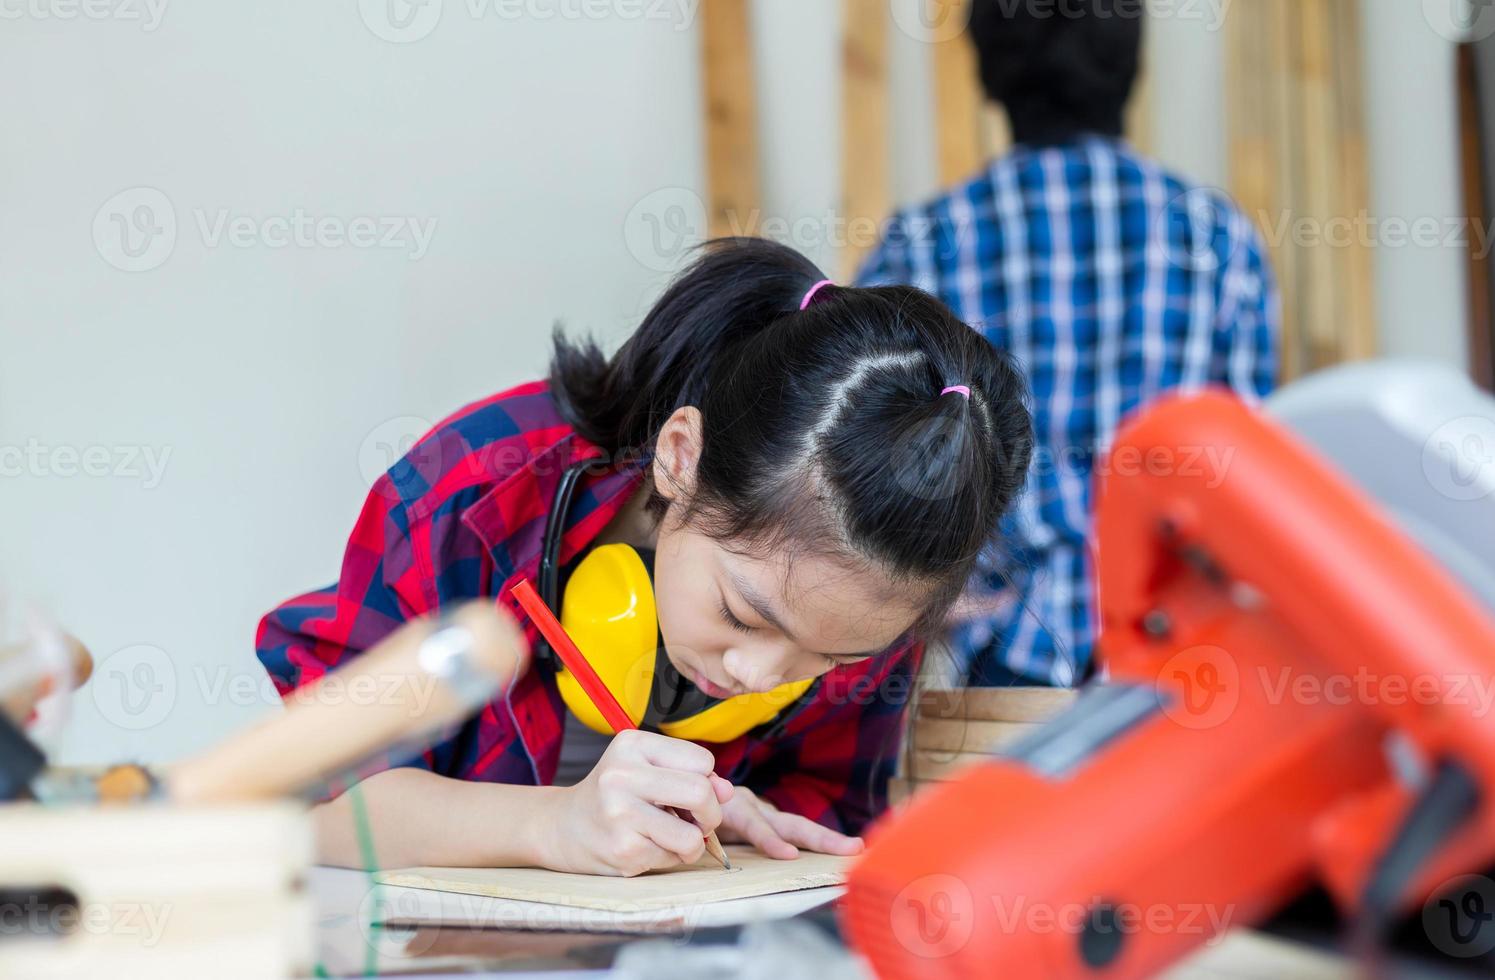 bambini che imparano la lavorazione del legno nel laboratorio dell'artigiano, ragazzo adolescente con la sua sorellina che costruisce un laboratorio insieme in un laboratorio di falegnameria. foto